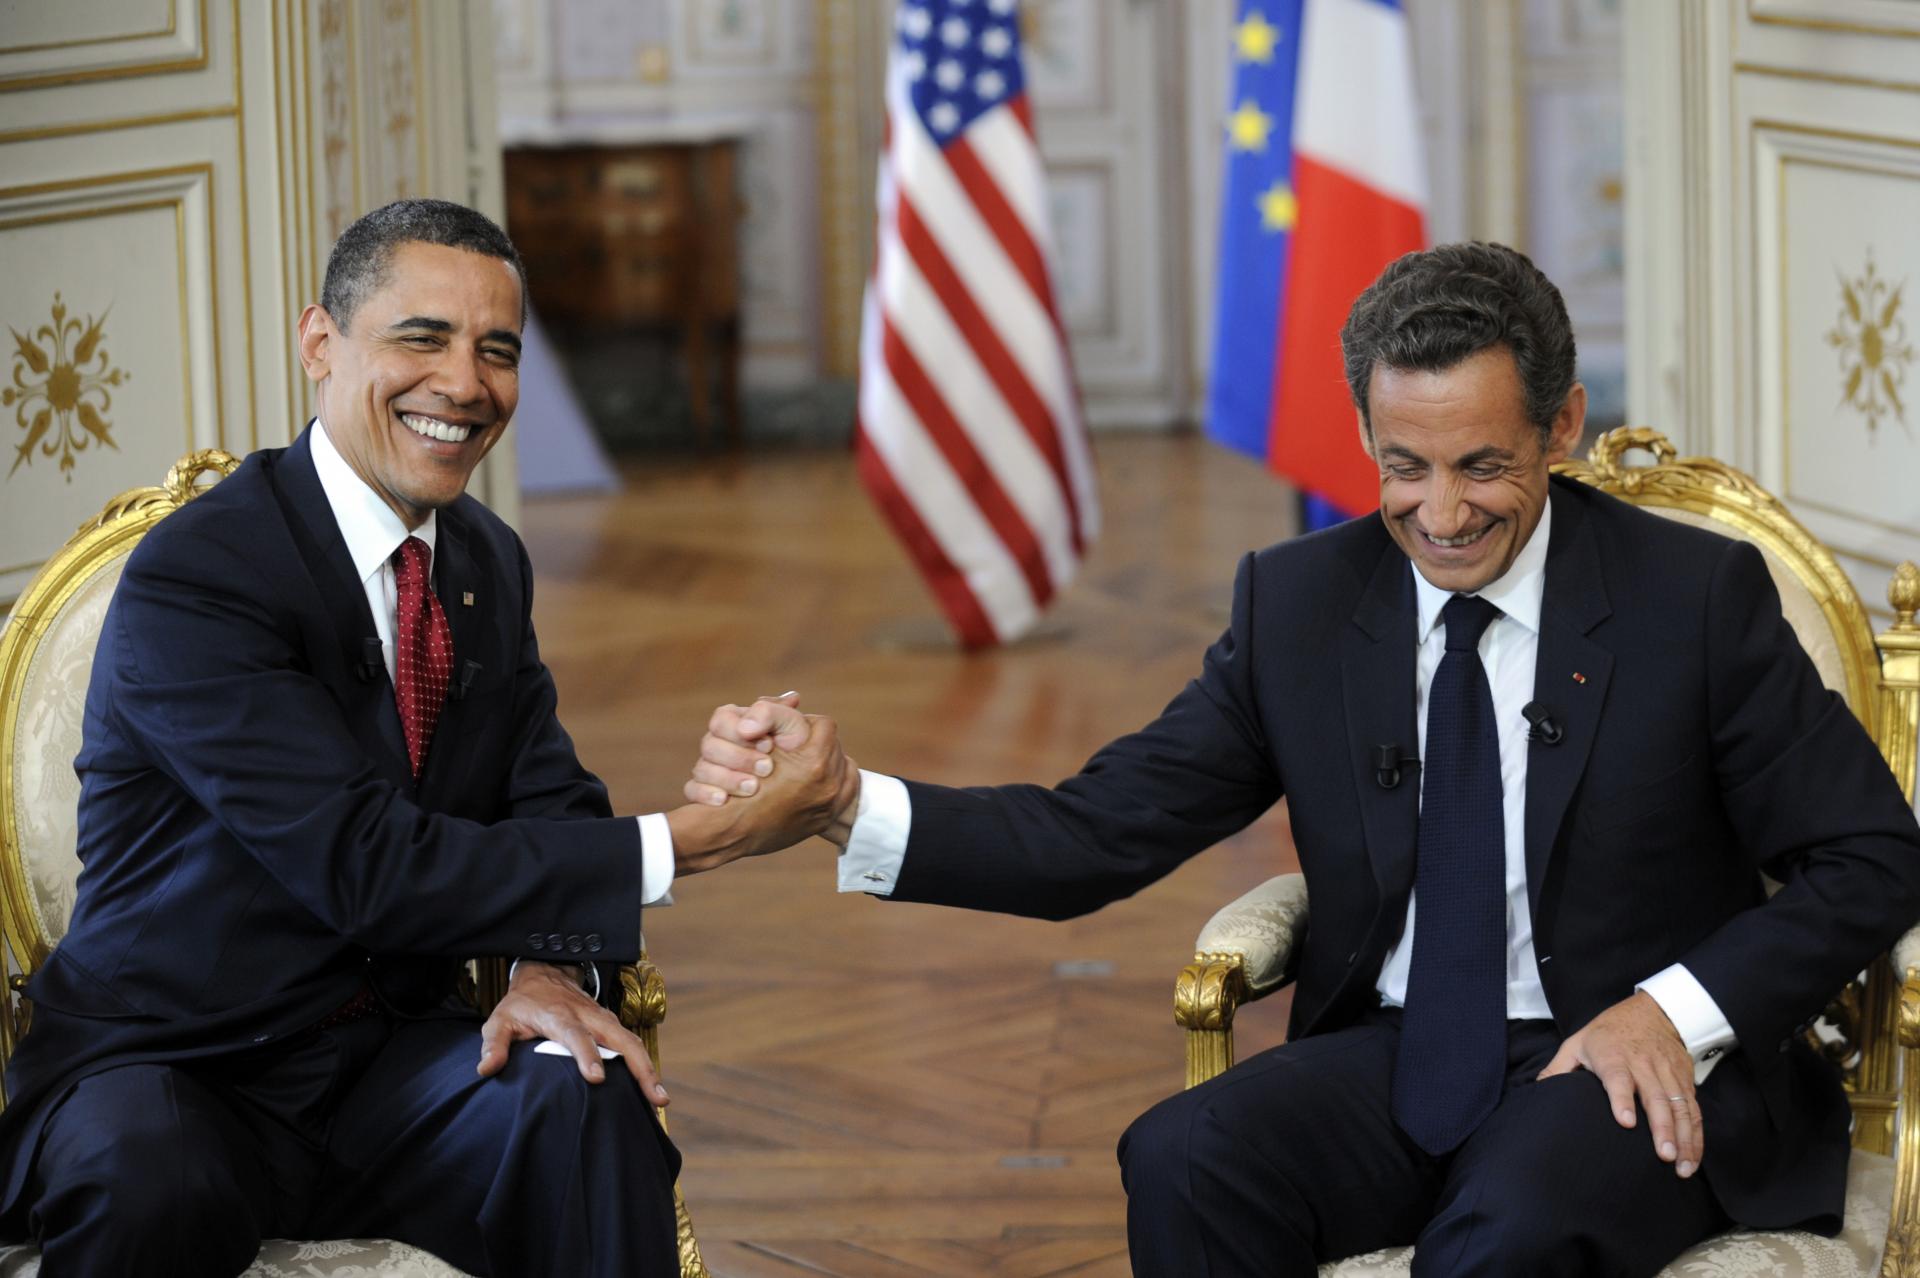 Barack Obama : Ce tacle à Nicolas Sarkozy à propos de Carla Bruni